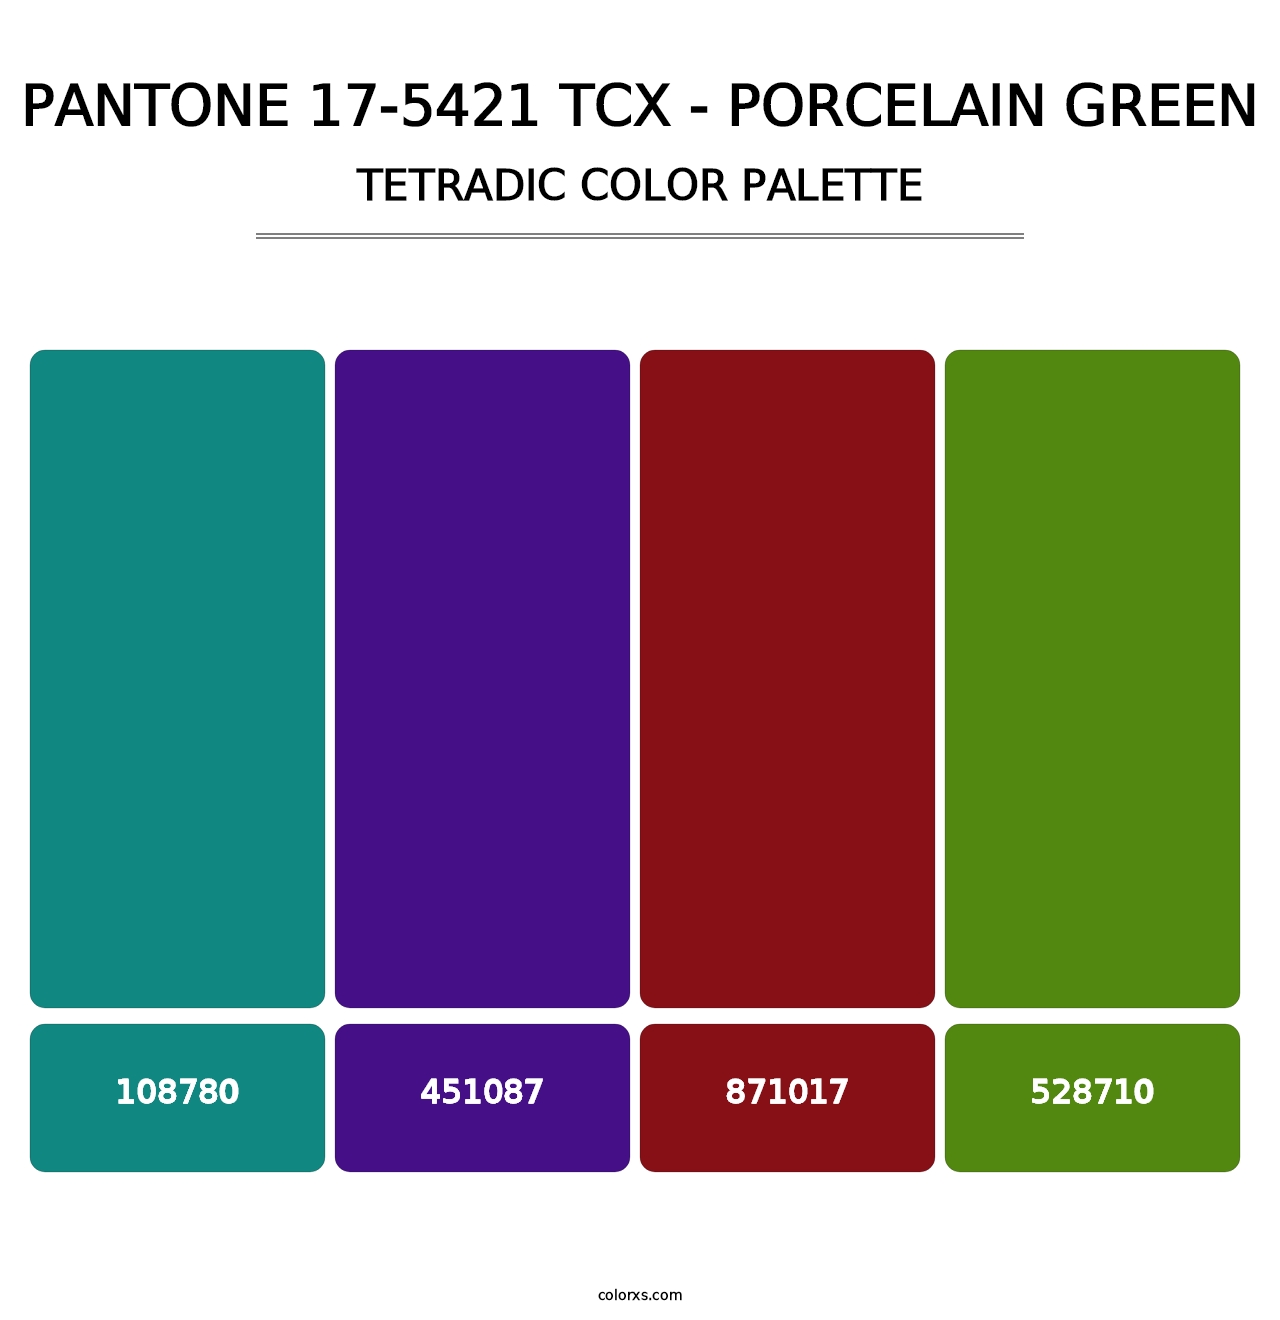 PANTONE 17-5421 TCX - Porcelain Green - Tetradic Color Palette